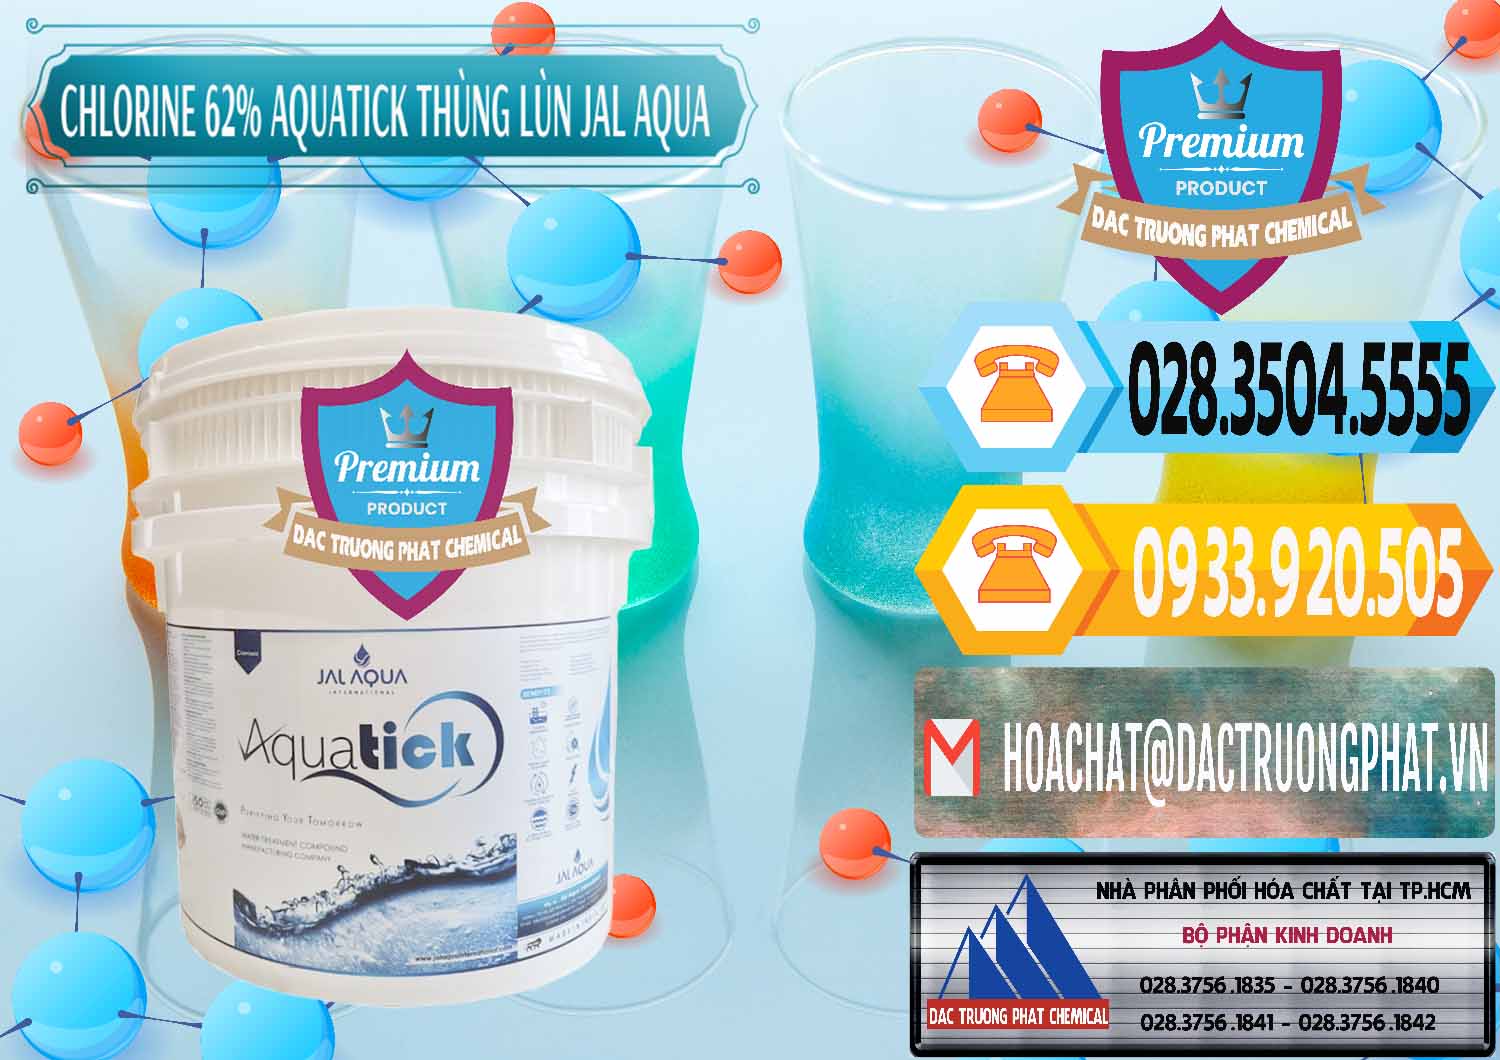 Cty chuyên cung cấp & bán Chlorine – Clorin 62% Aquatick Thùng Lùn Jal Aqua Ấn Độ India - 0238 - Nhà phân phối và kinh doanh hóa chất tại TP.HCM - hoachattayrua.net